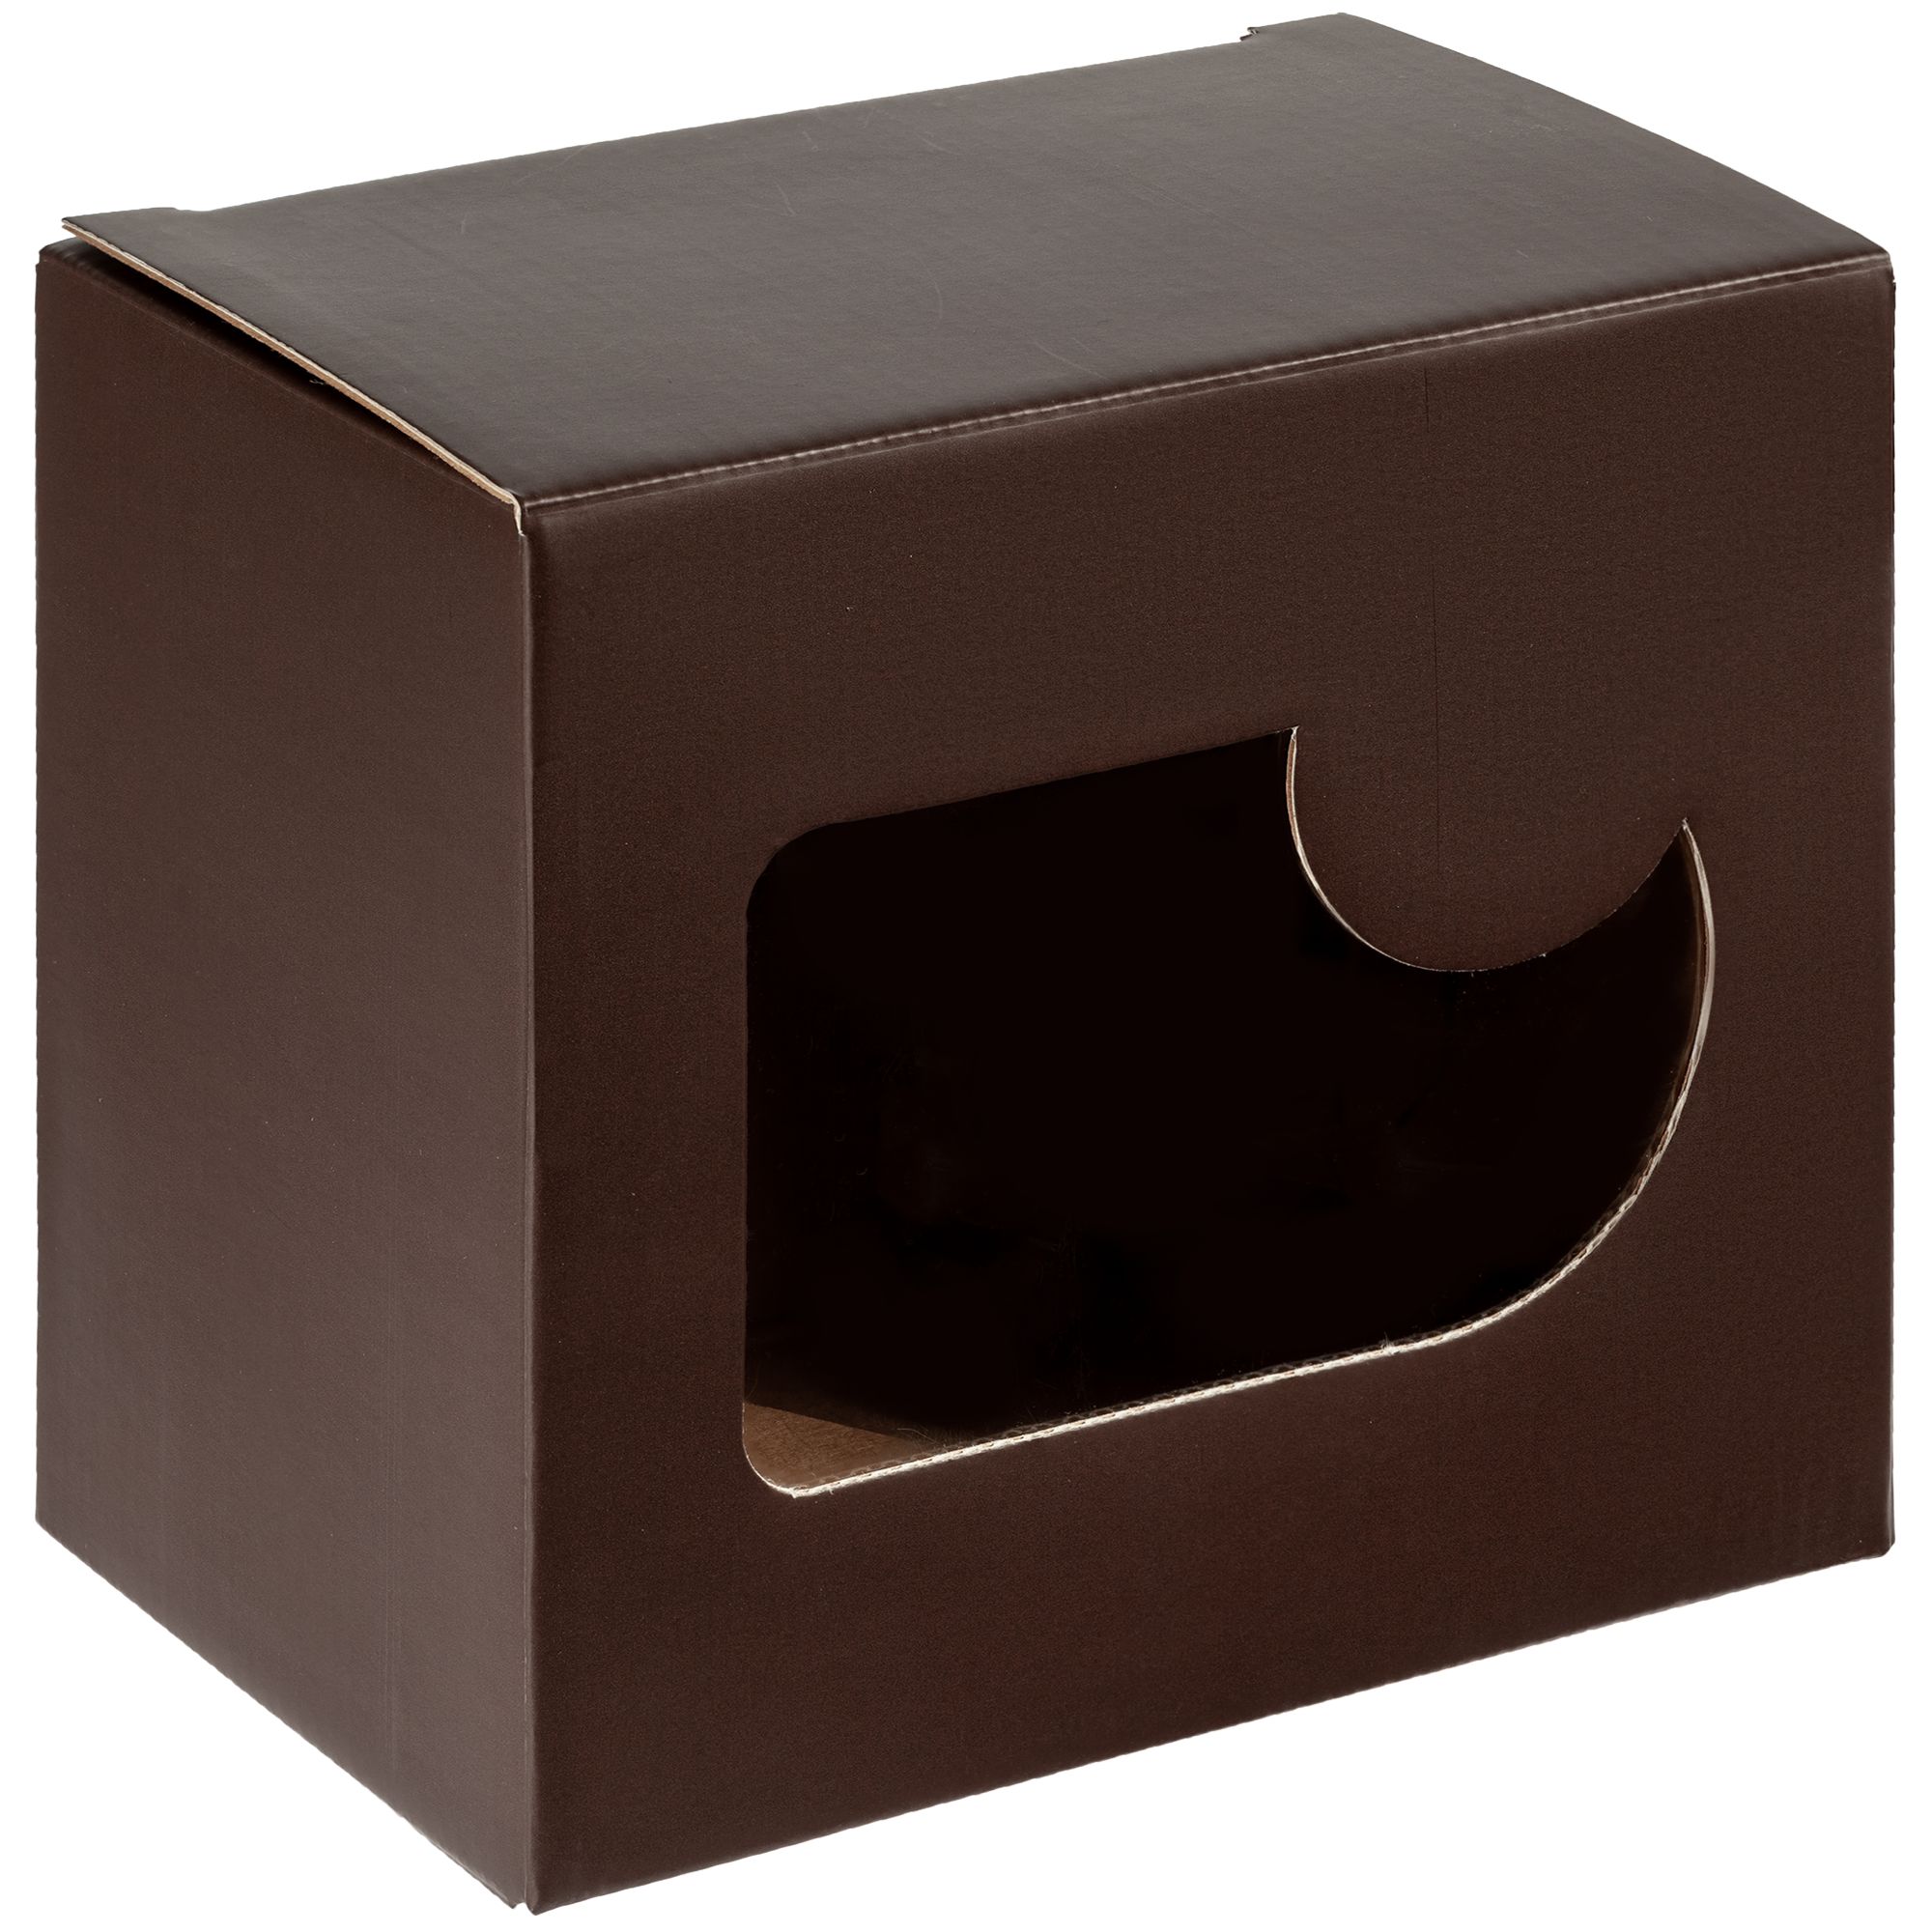 Коробка Gifthouse, коричневая (артикул 10920.55) - Проект 111